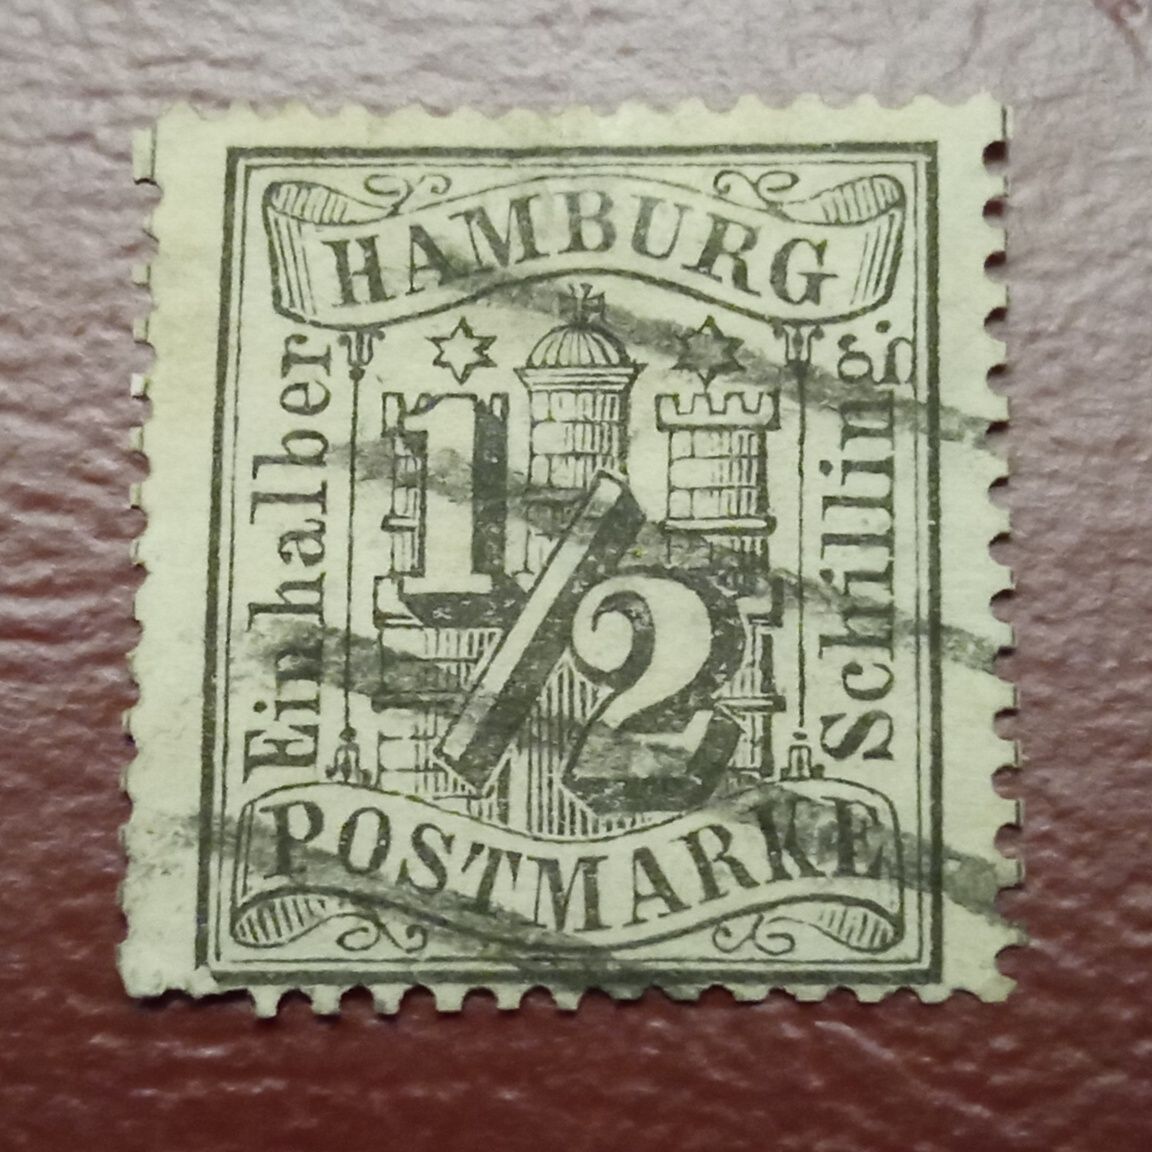 Znaczek pocztowy miasta Hamburg.